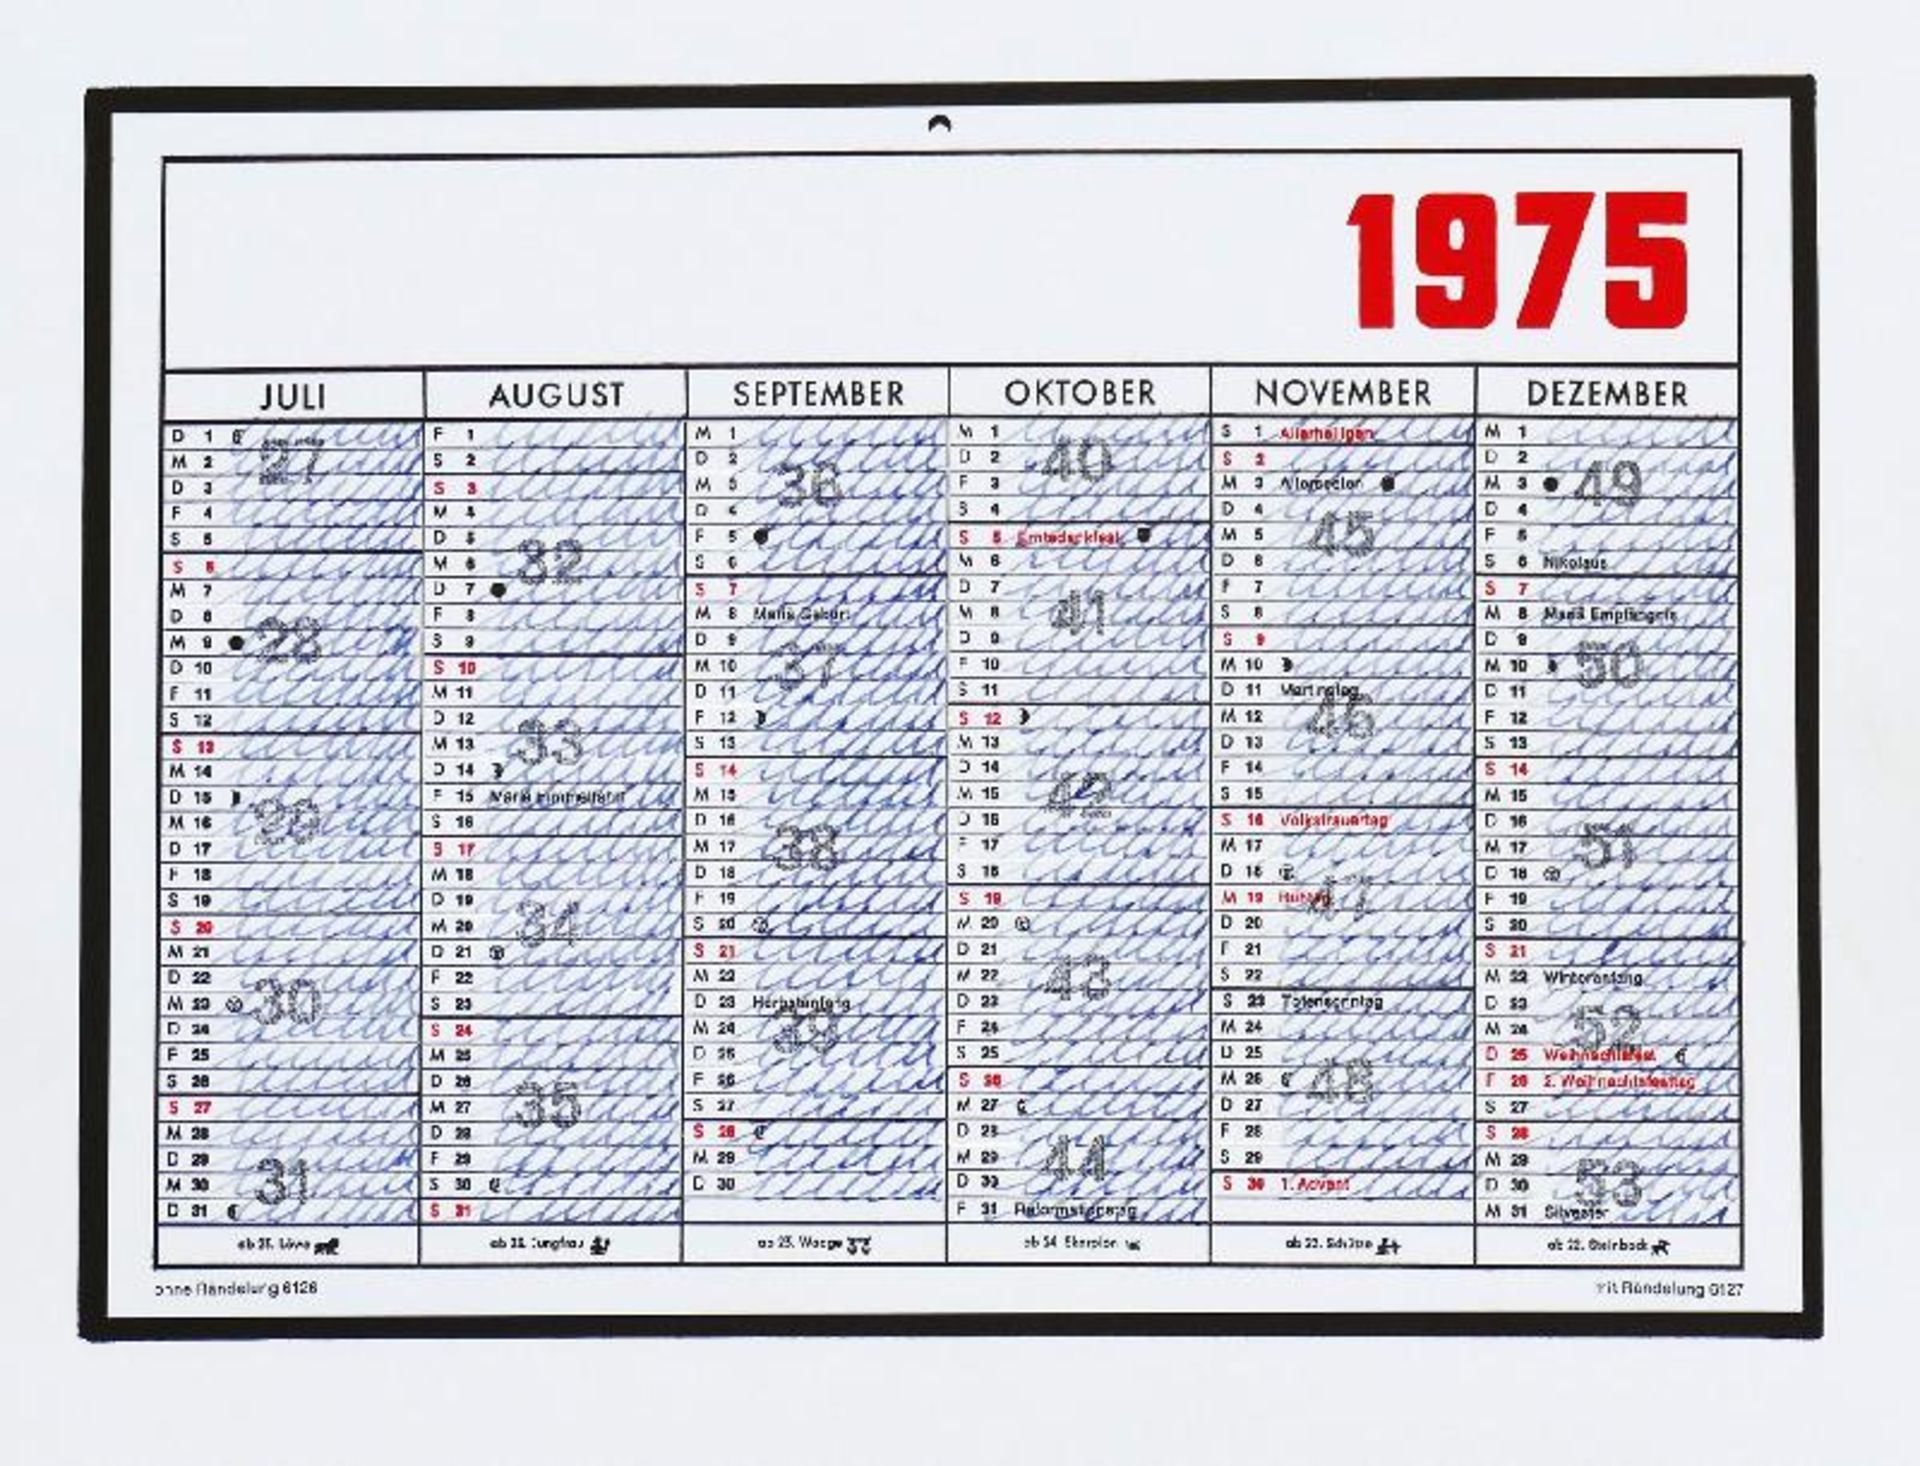 Darboven, Hanne - Konvolut von zwei Kalenderblättern 1975 - Image 2 of 2